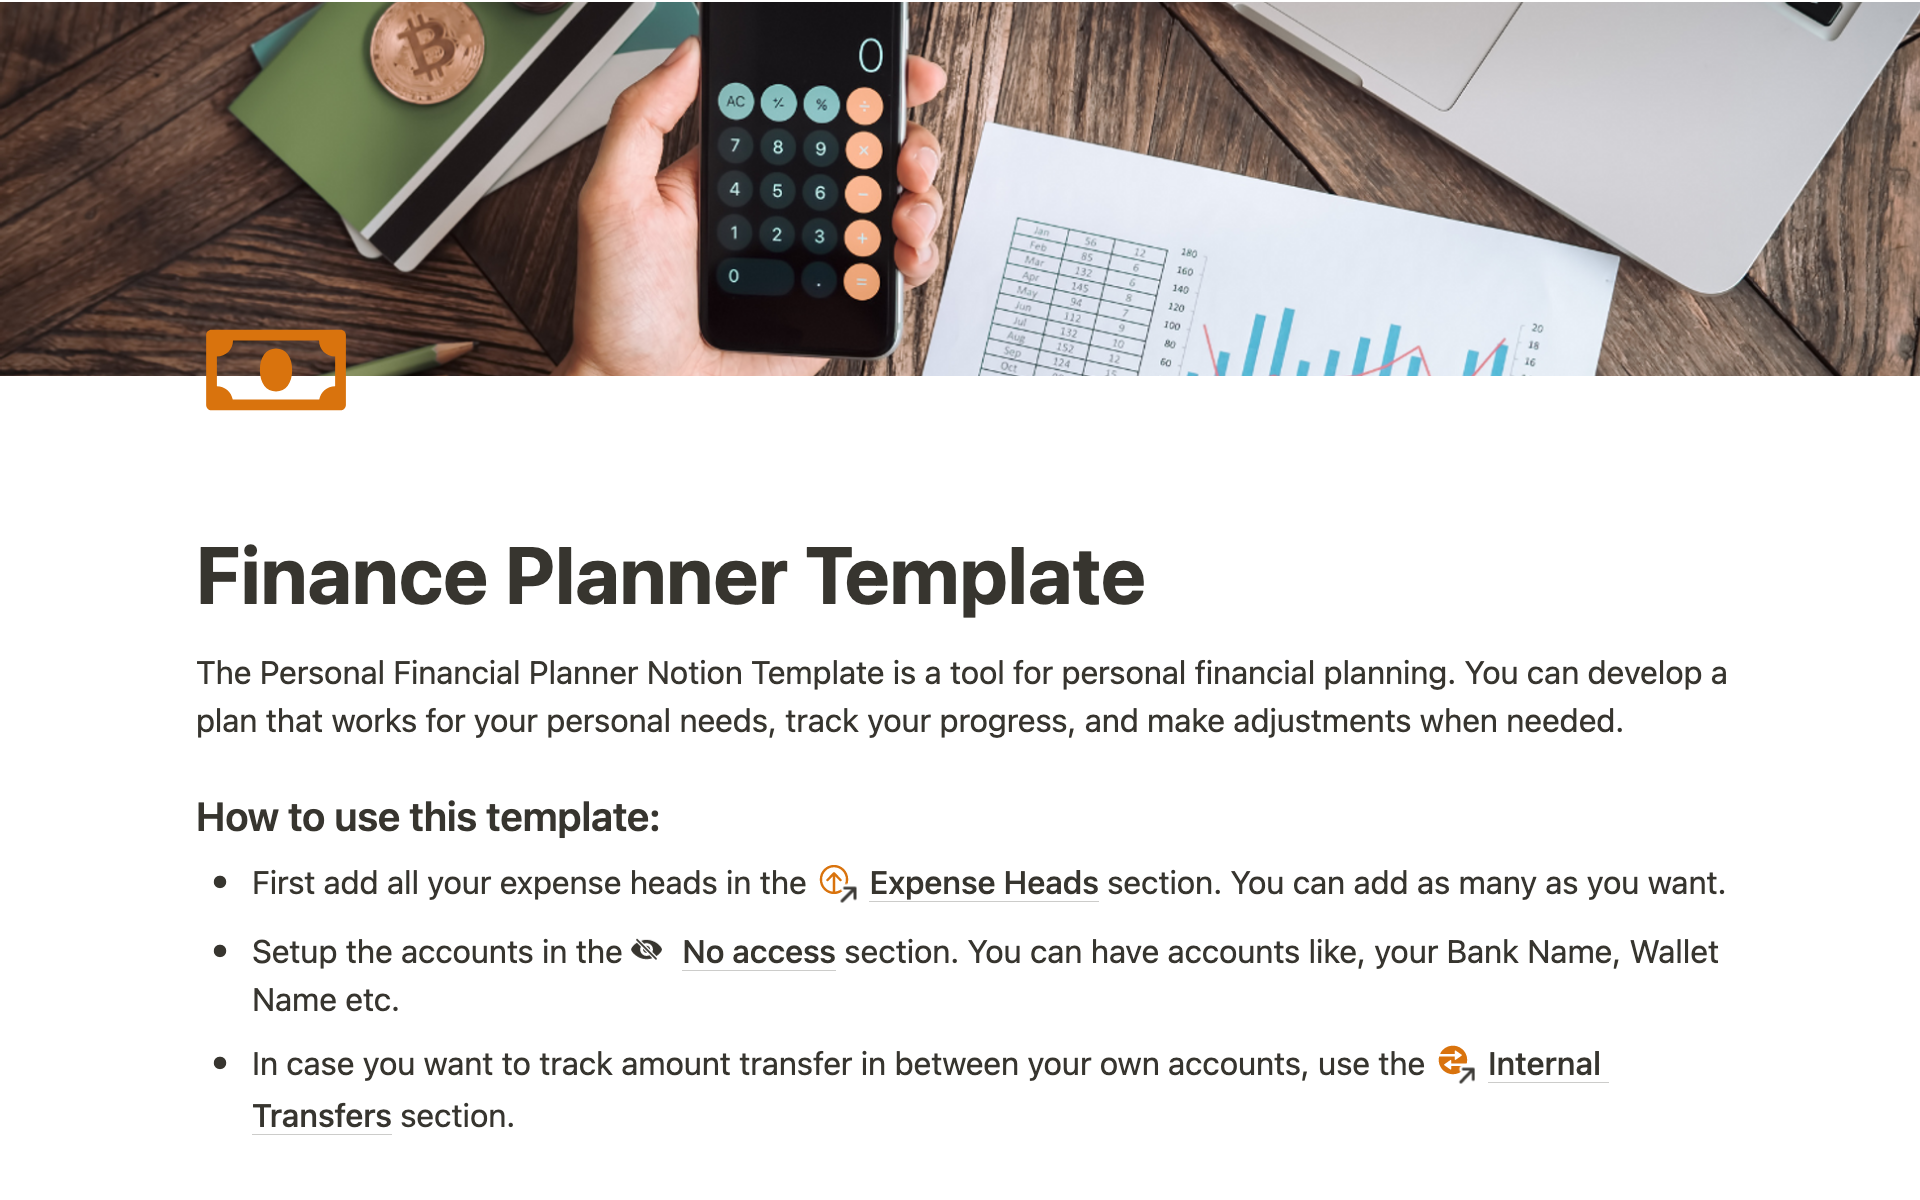 Vista previa de una plantilla para Finance Planner Template